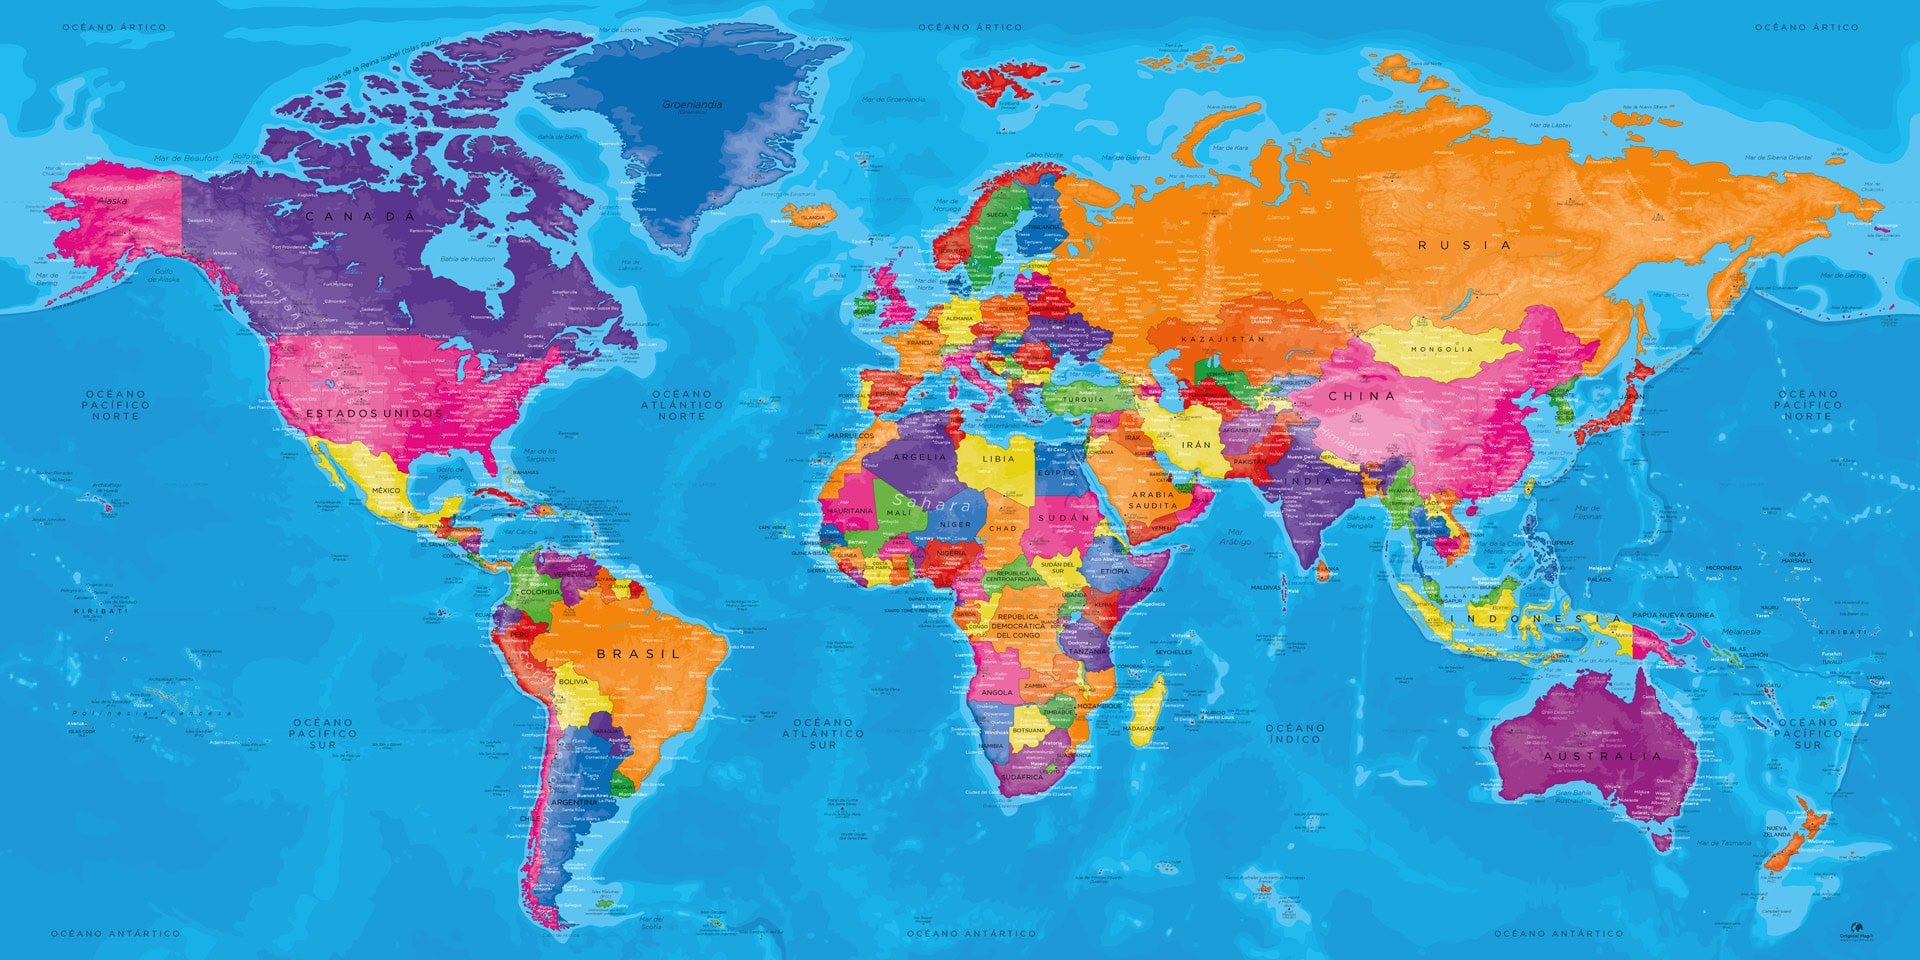 Cuadro Mapa Mundial - Manarola